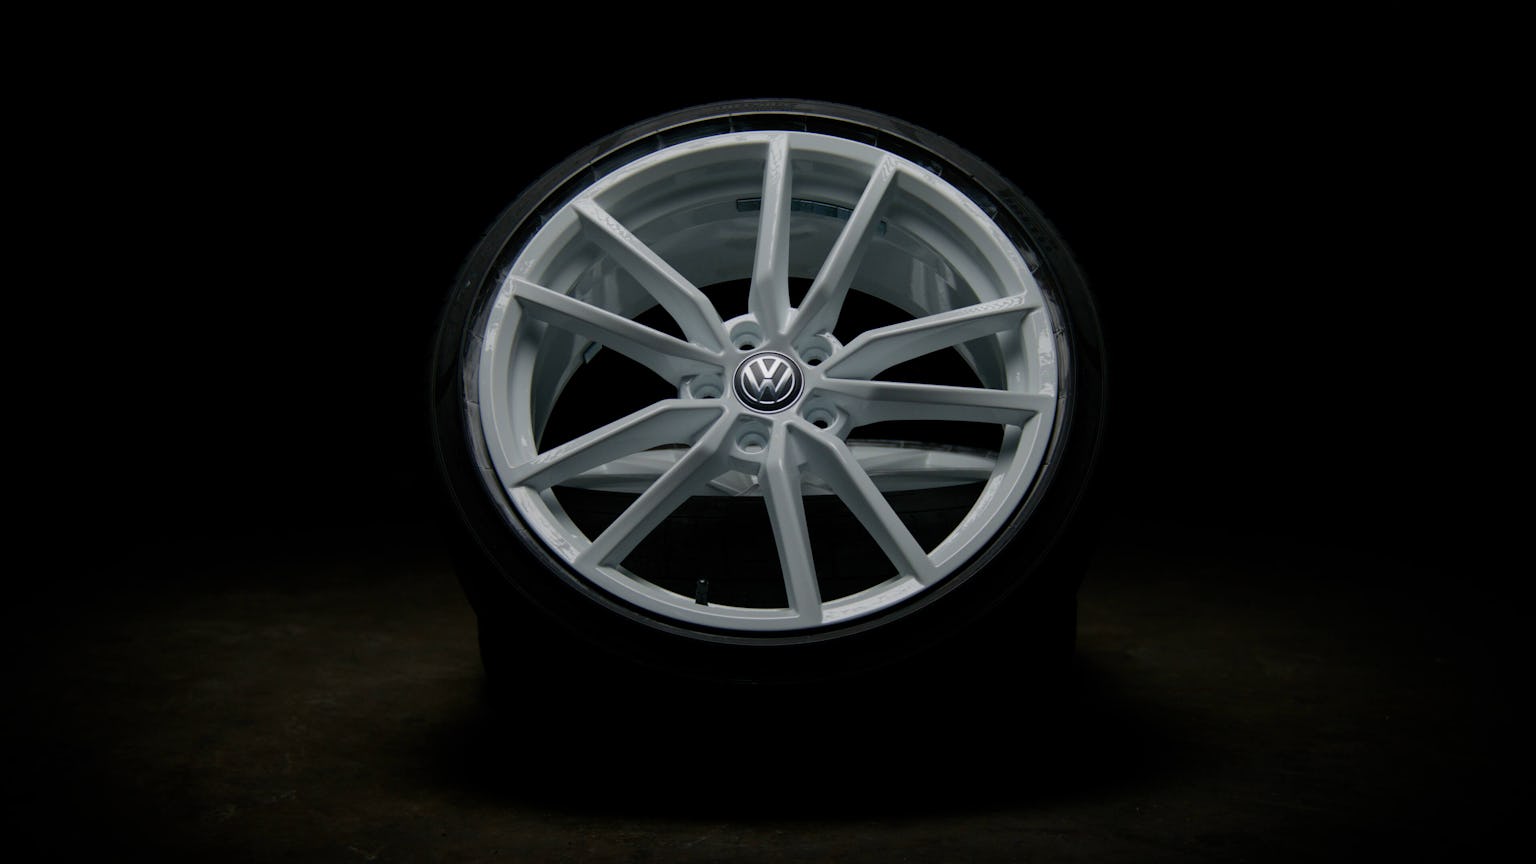 Refurnished Volkswagen alloy wheel in white